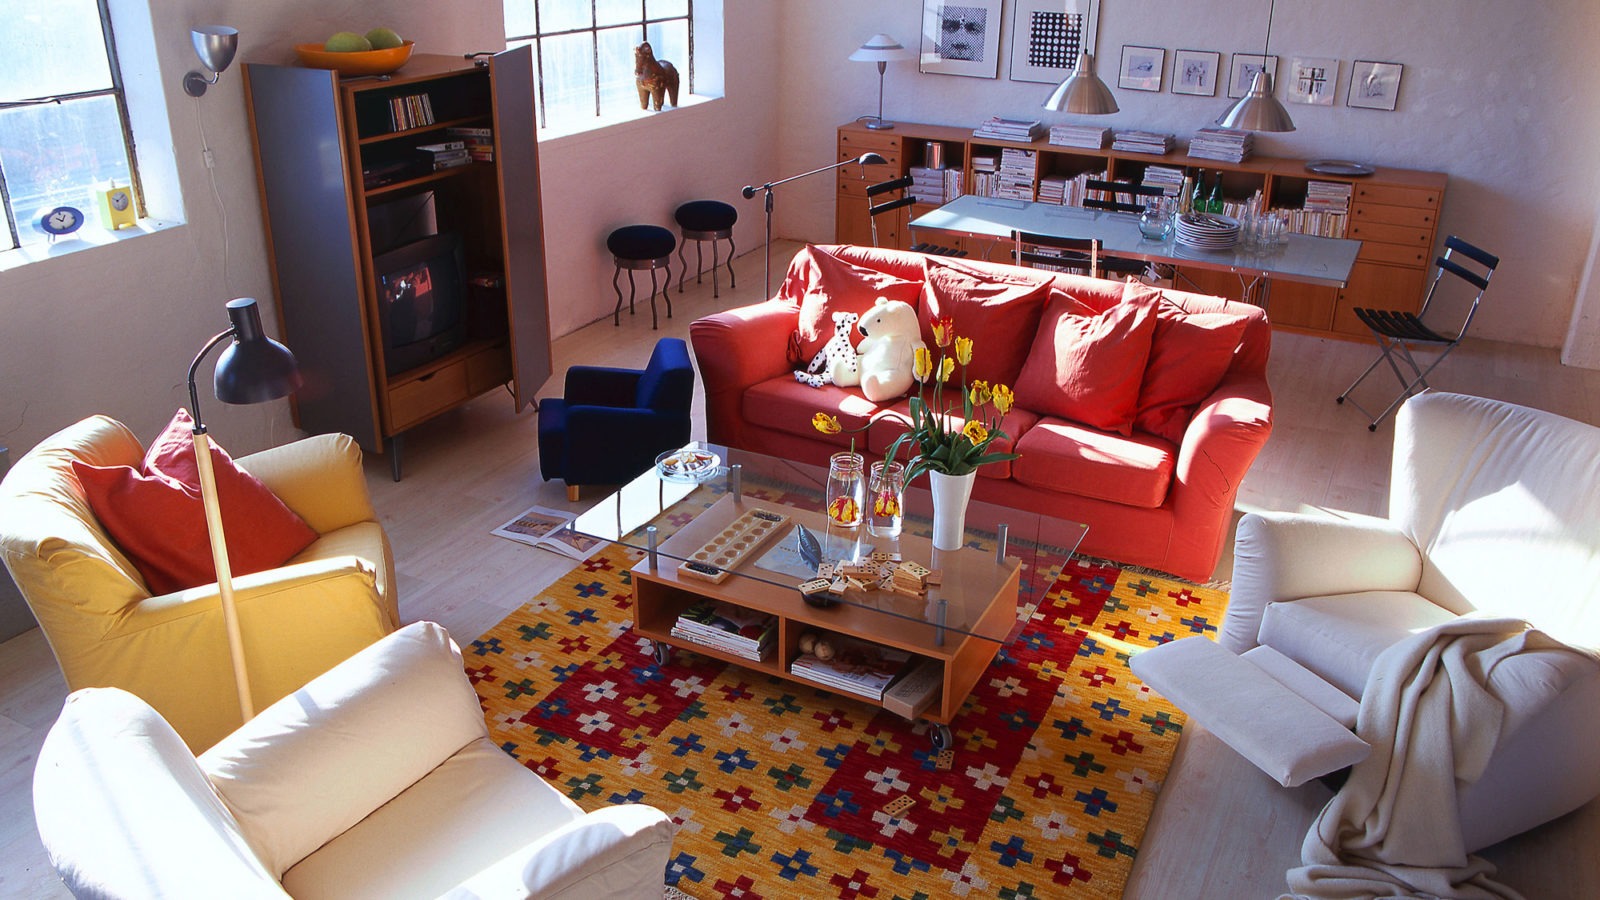 Großes Wohnzimmer mit Sitzgruppe aus Sofa und Sesseln in verschiedenen Farben. Couchtisch mit Ablage und Glas-Tischplatte.